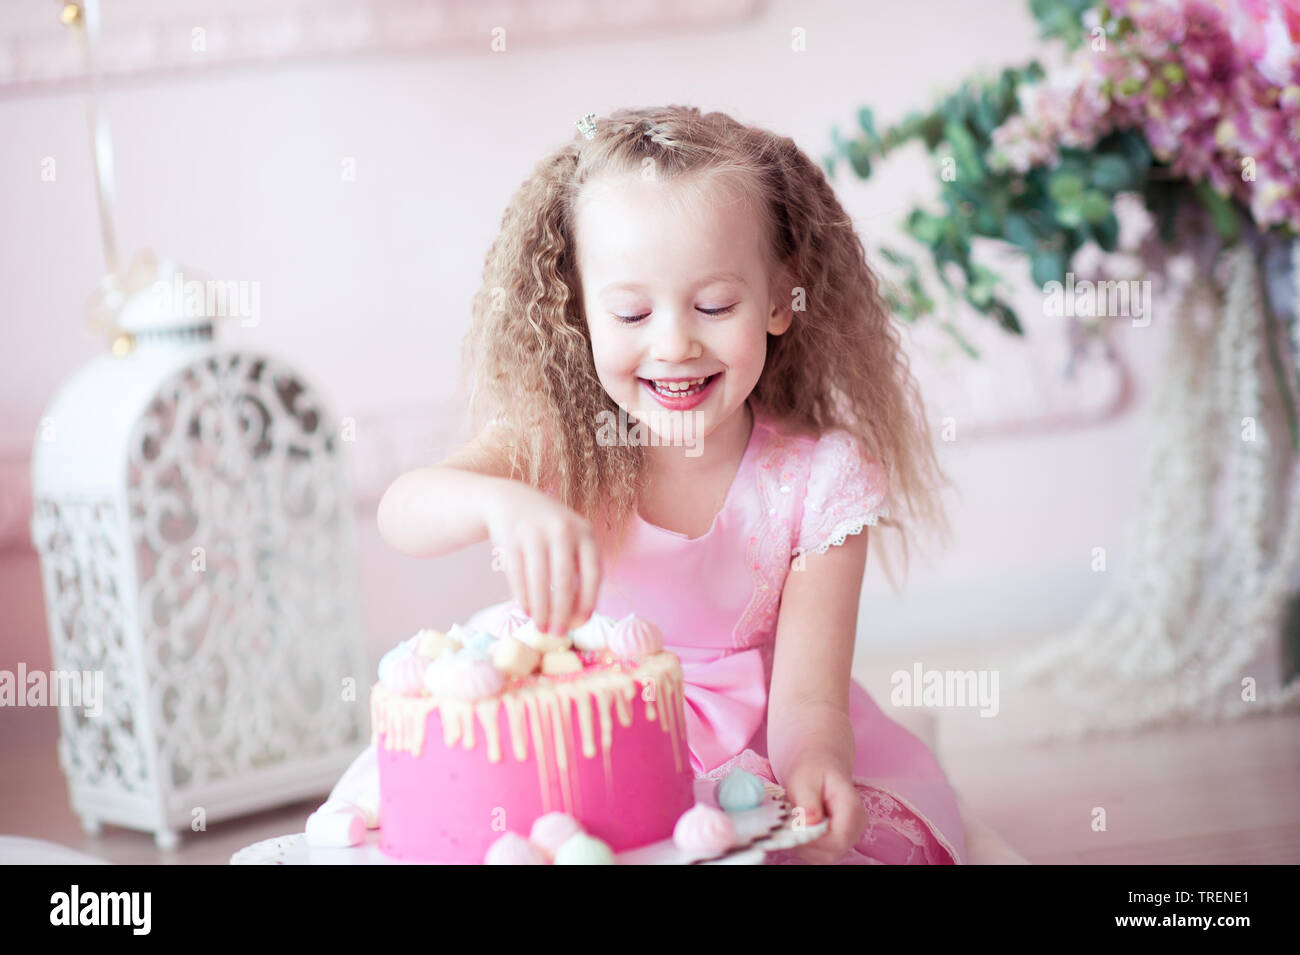 ANNIVERSARY OR BIRTHDAY CAKE | Cake, No bake cake, Desserts